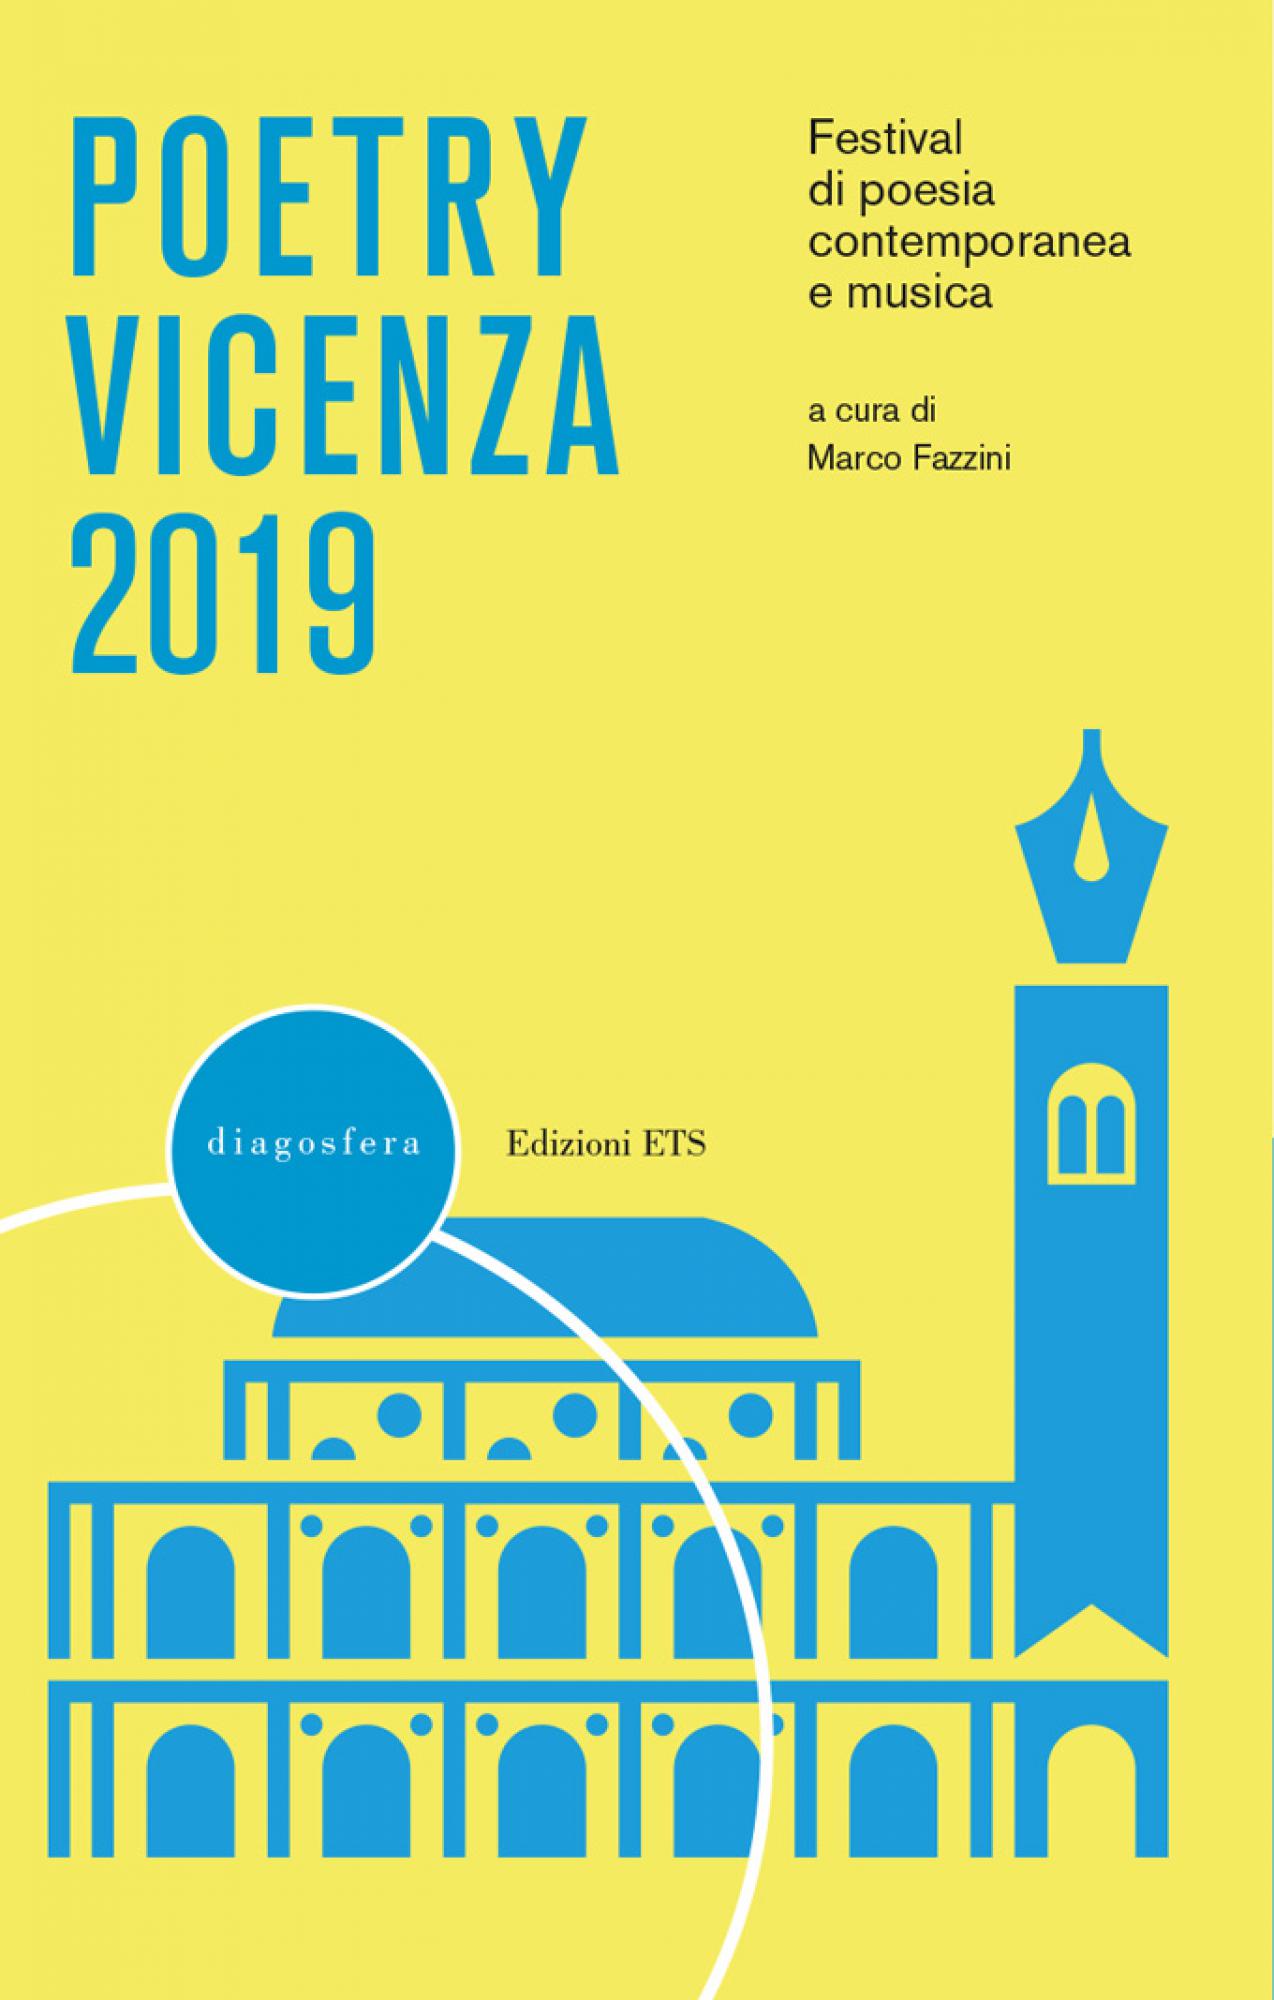 Poetry Vicenza 2019.Festival di poesia contemporanea e musica